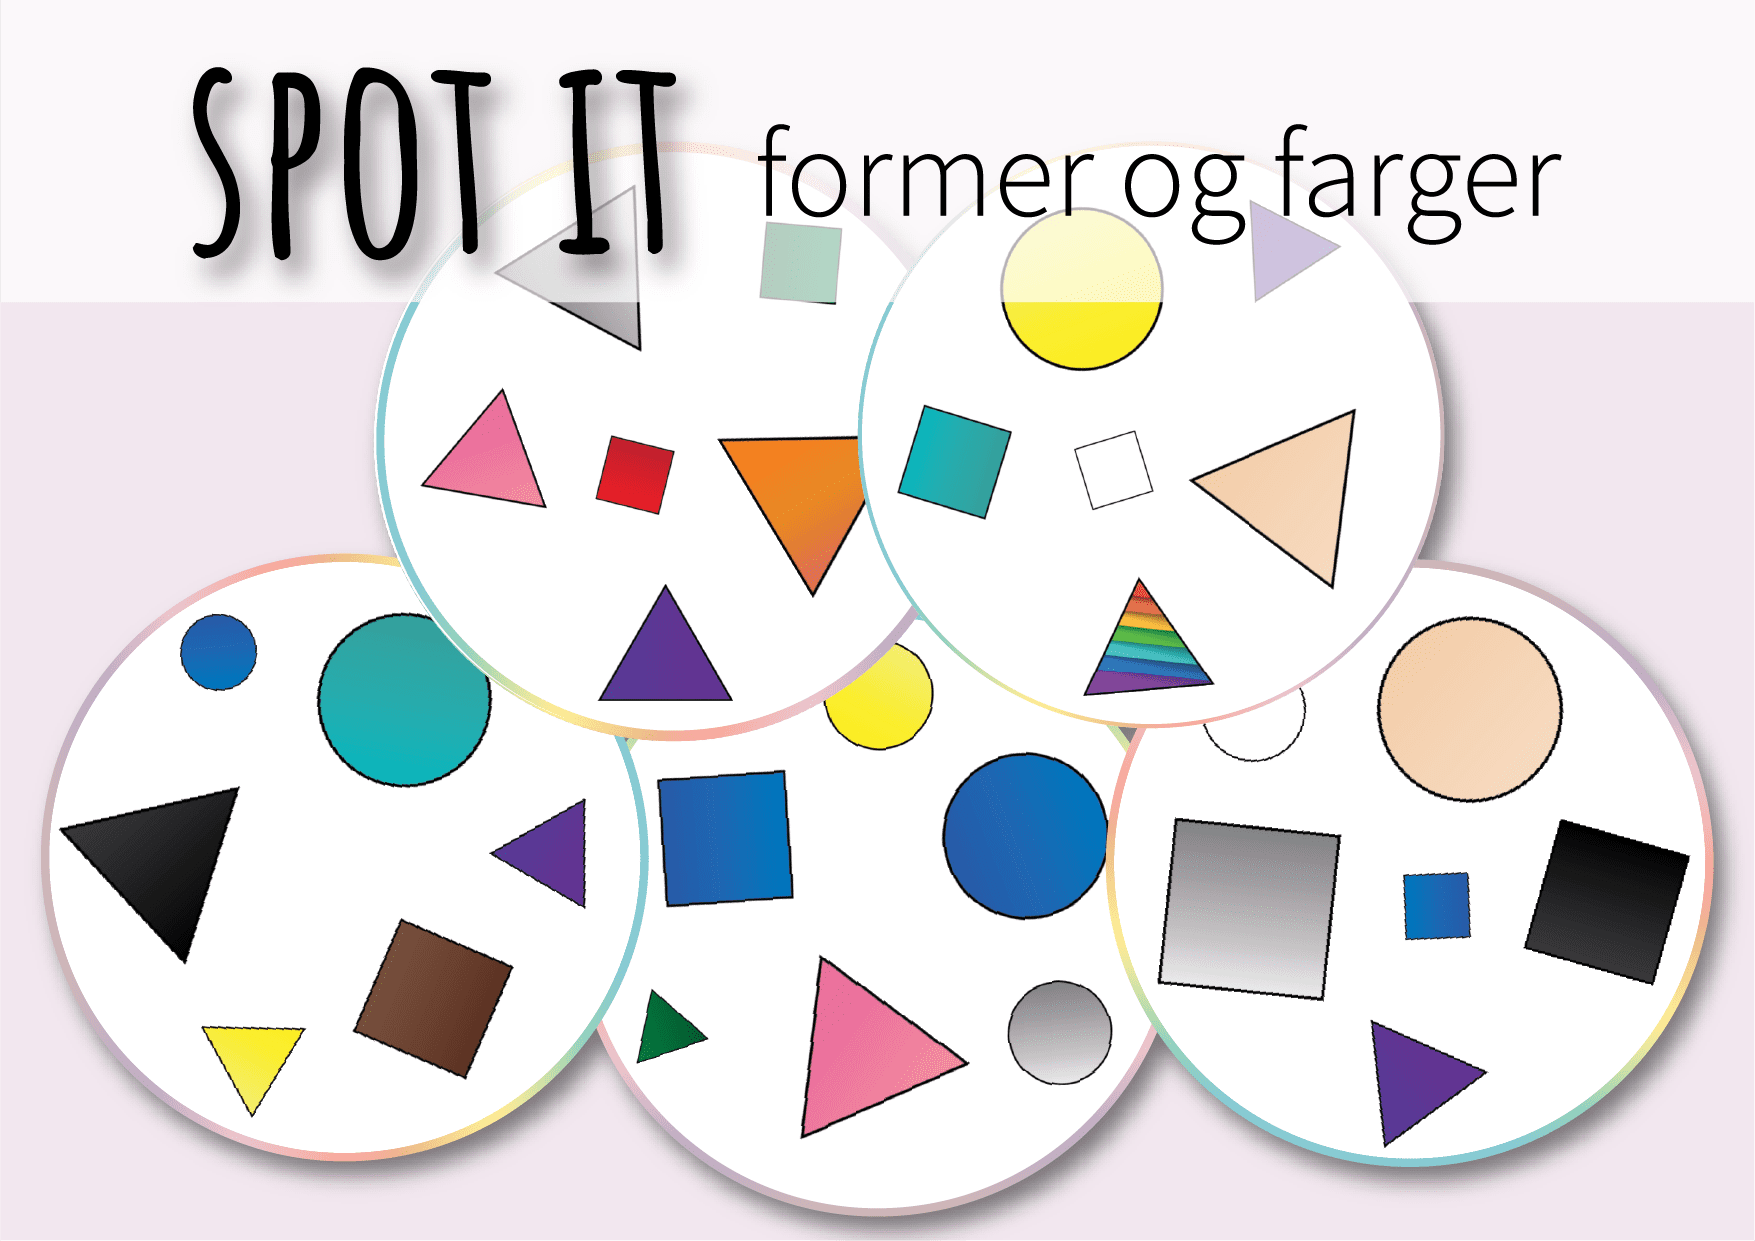 Spot it: former og farger